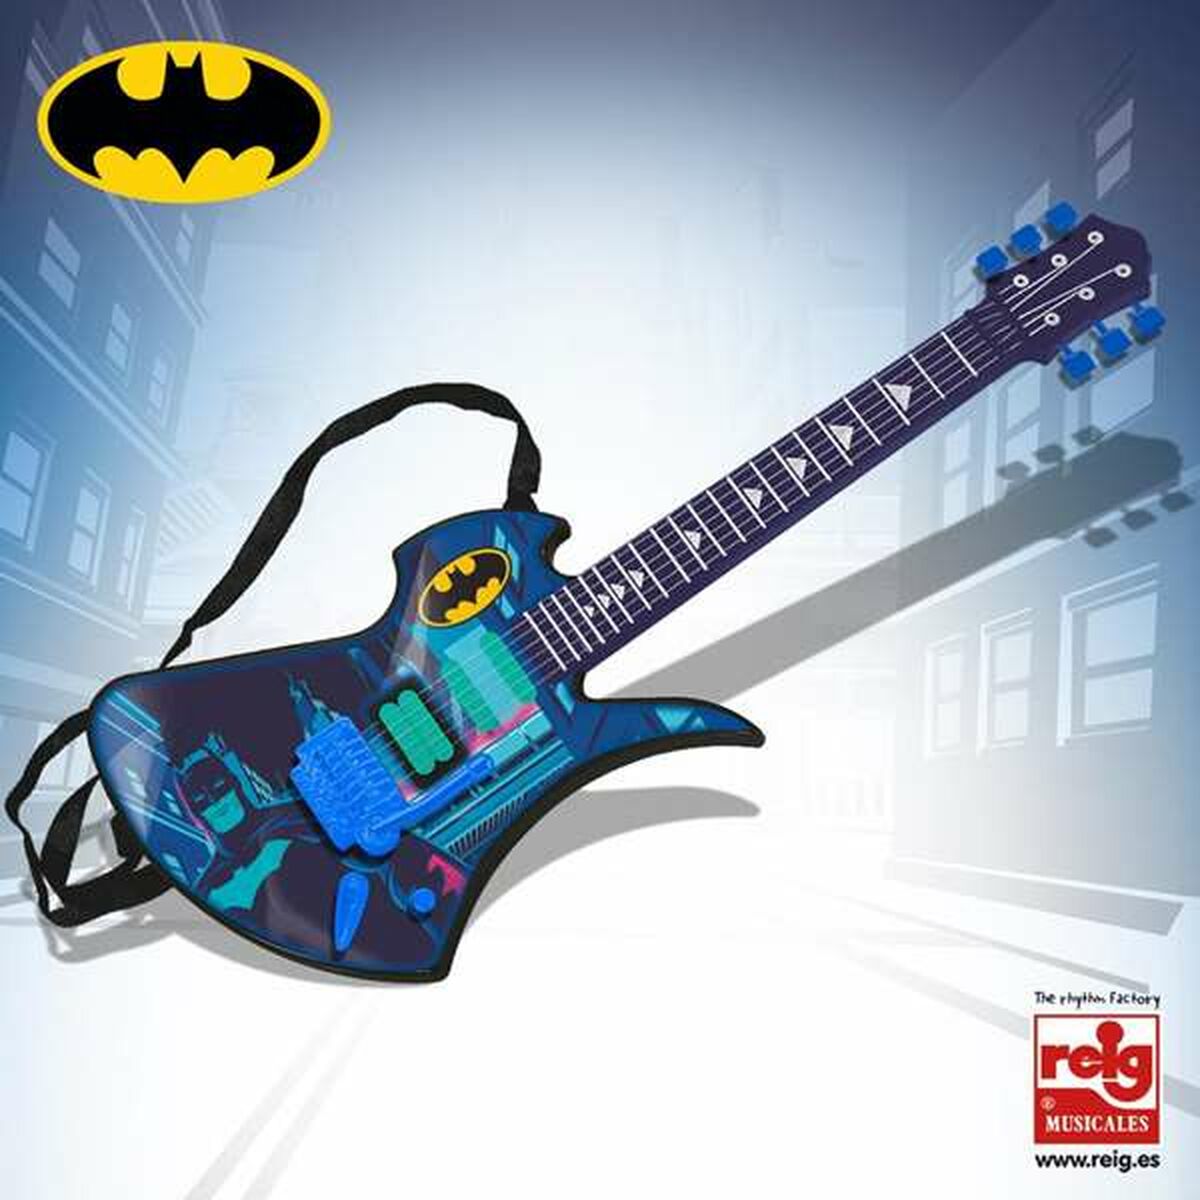 Gitarr för barn Batman Elektronik-Leksaker och spel, Barns Musikinstrument-Batman-peaceofhome.se